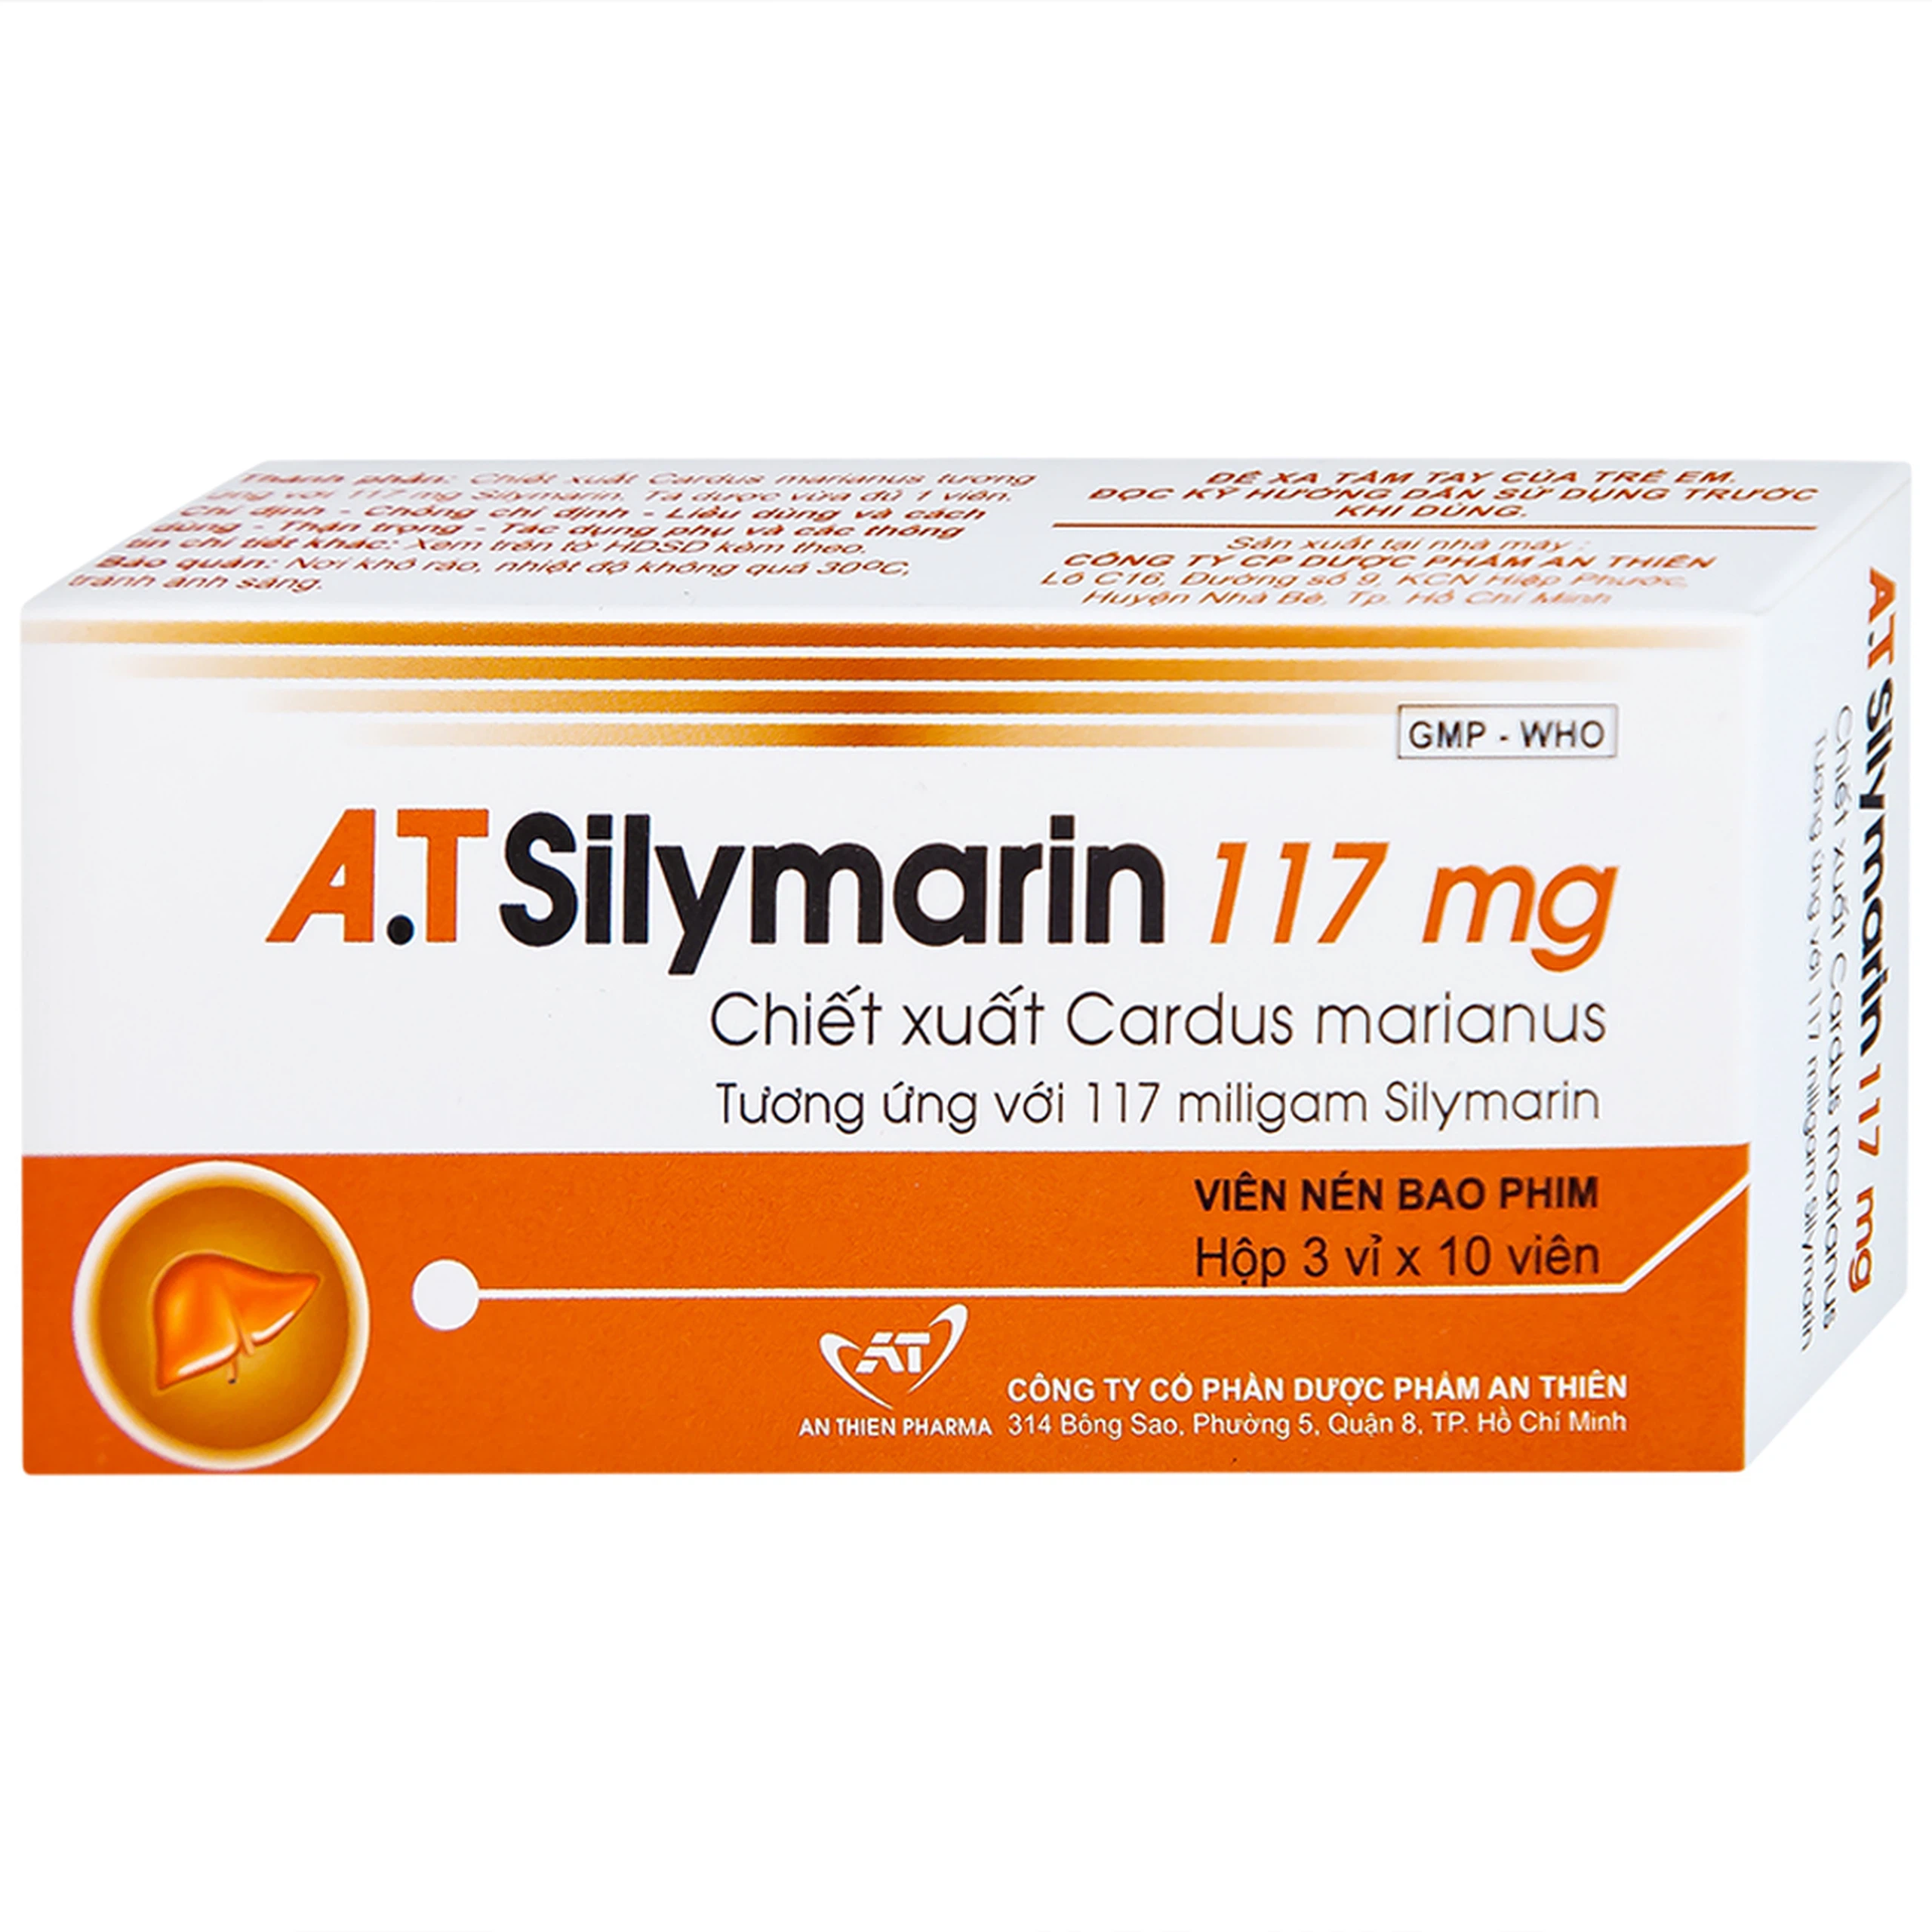 Thuốc A.T Silymarin 117mg An Thiên hỗ trợ điều trị bệnh viêm gan mạn tính, xơ gan (3 vỉ x 10 viên)